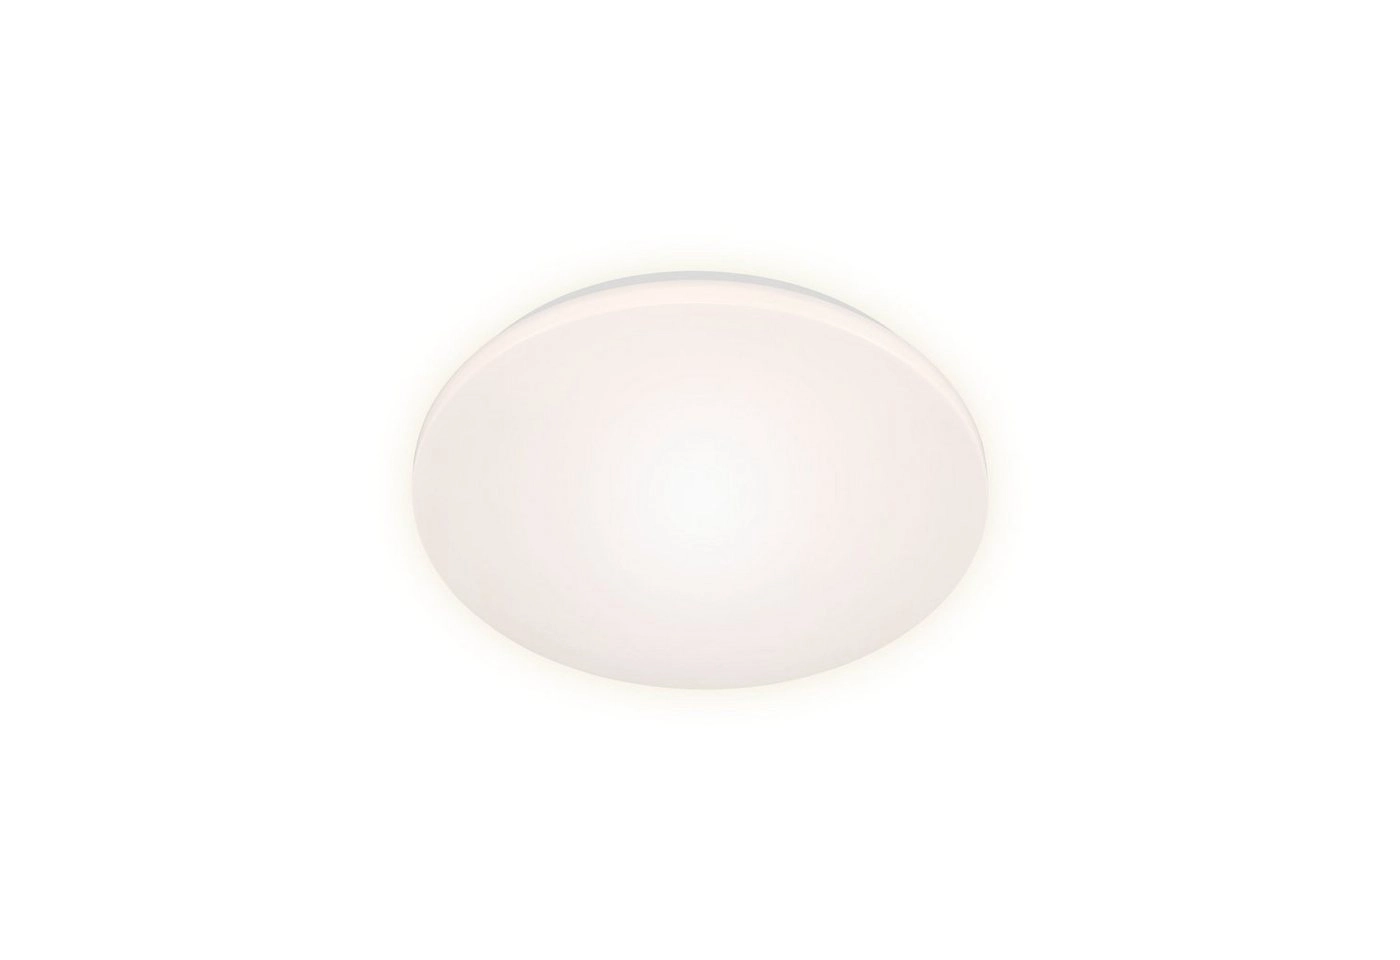 LED Deckenleuchte, Ø 27,5 cm, 15 W, Weiß